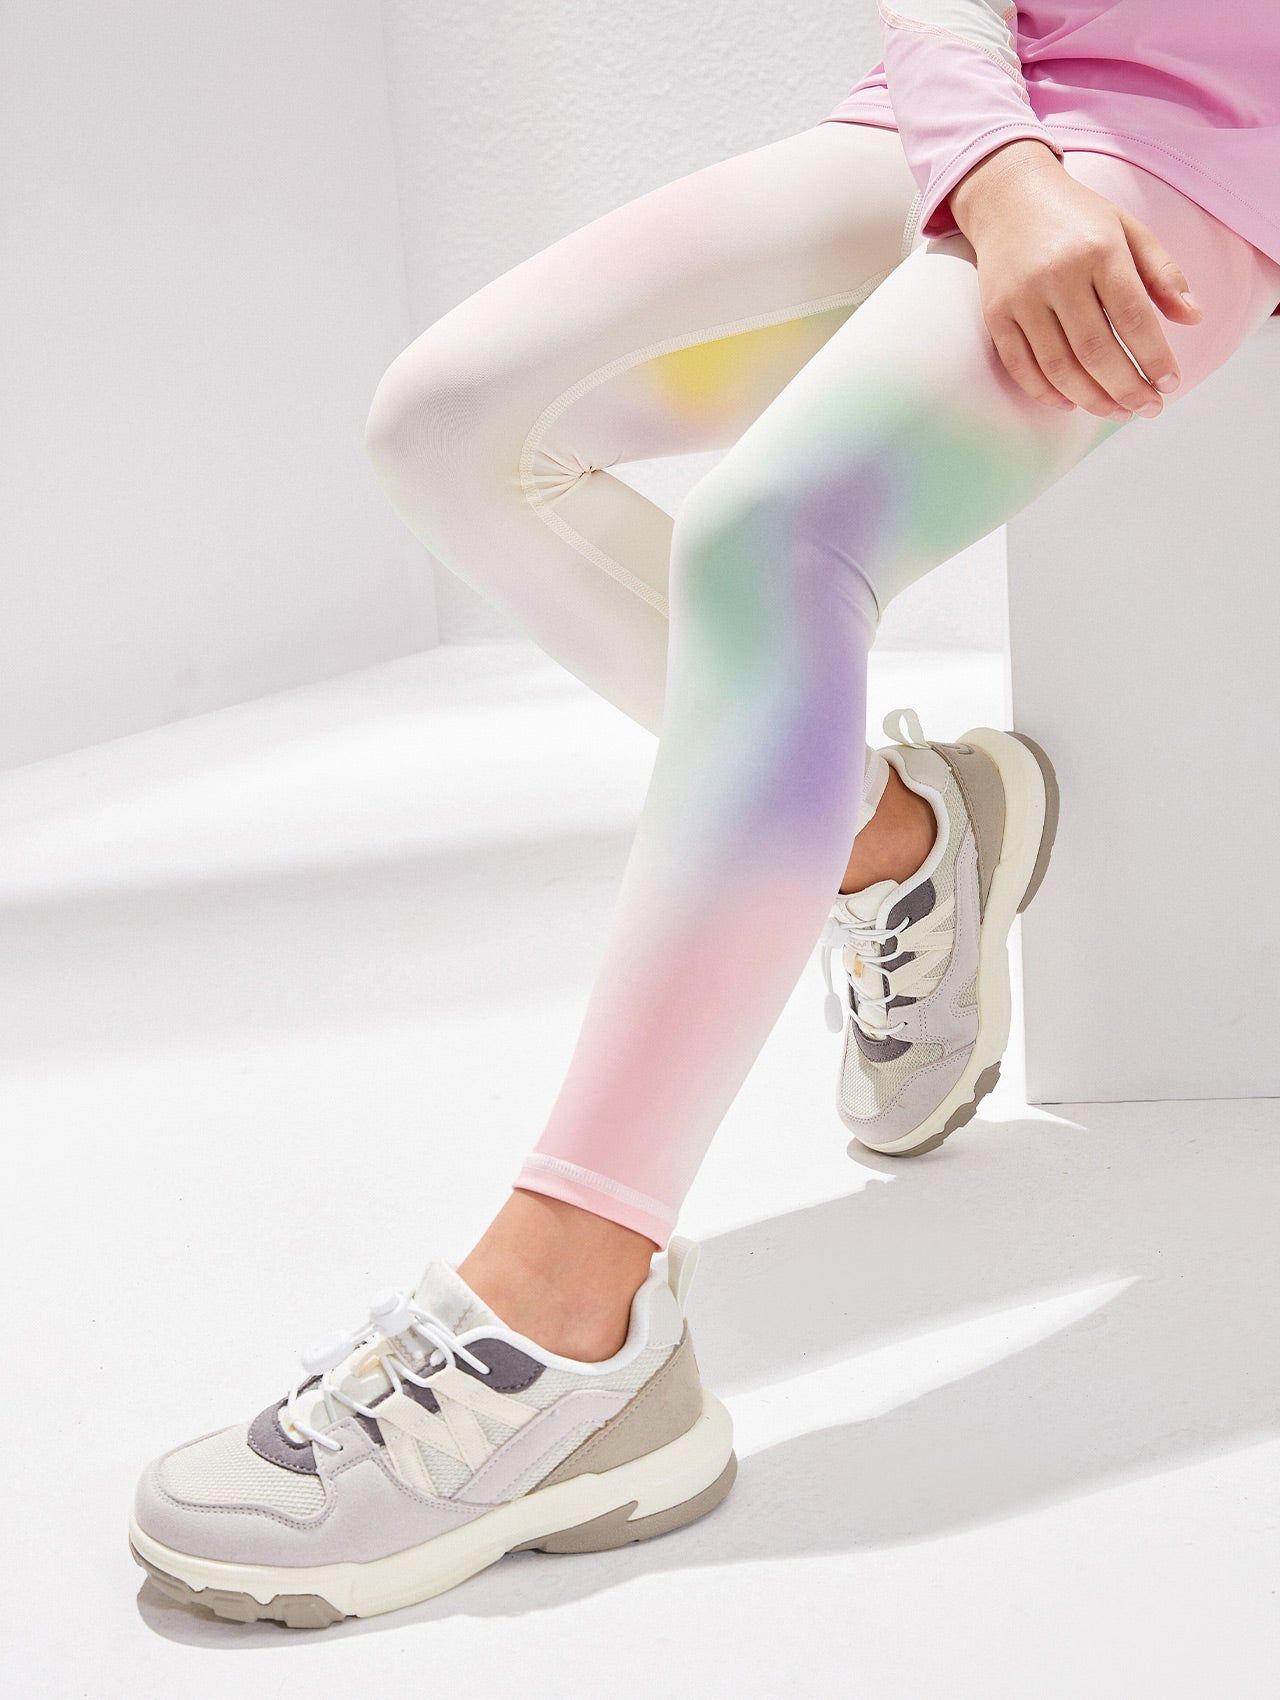 Girls Colorful Leggings